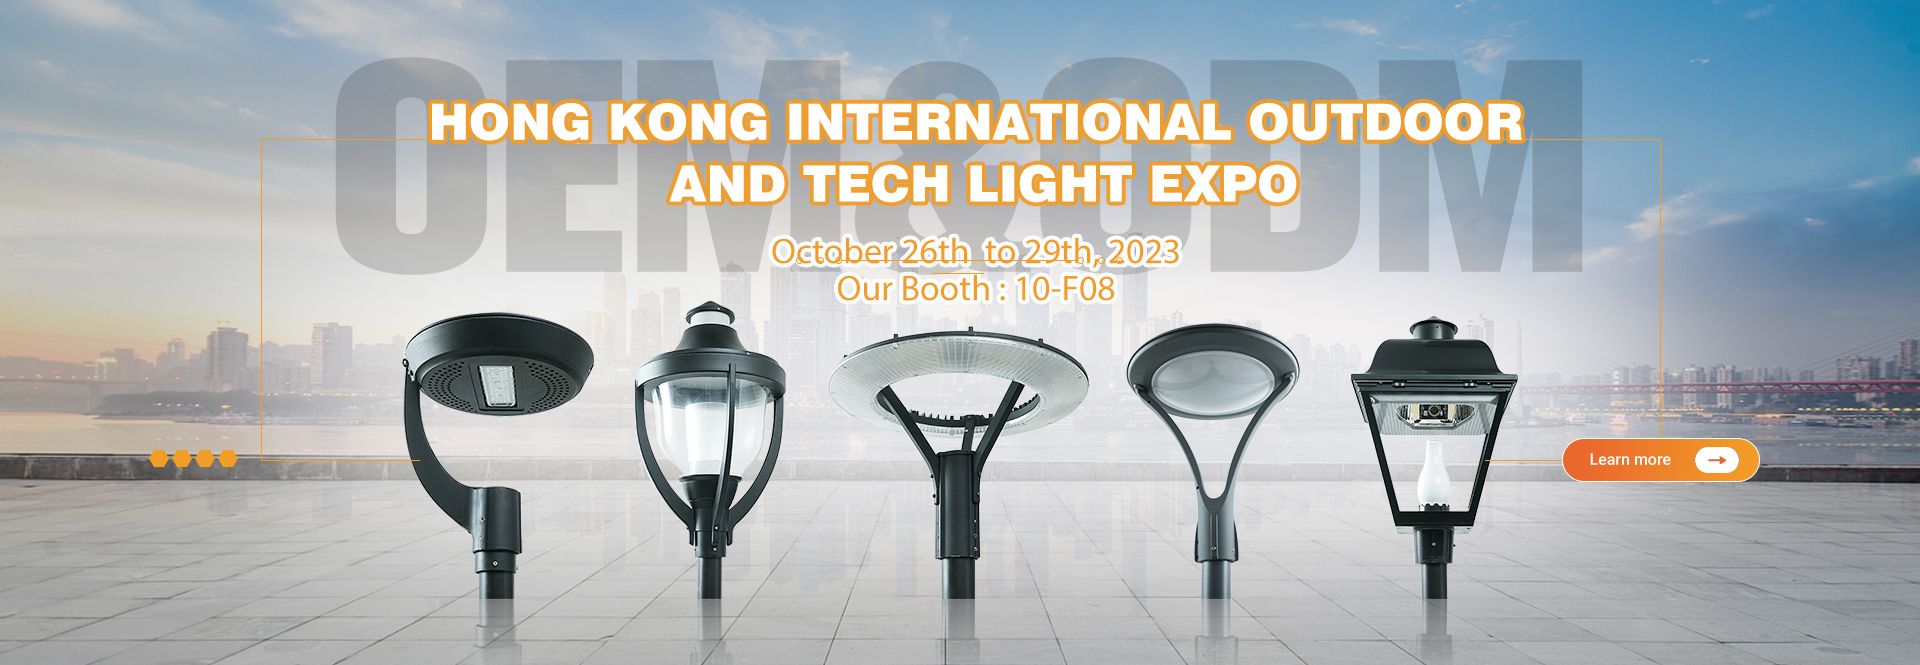 2023 Hong Kong International Outdoor And Tech Light Expo